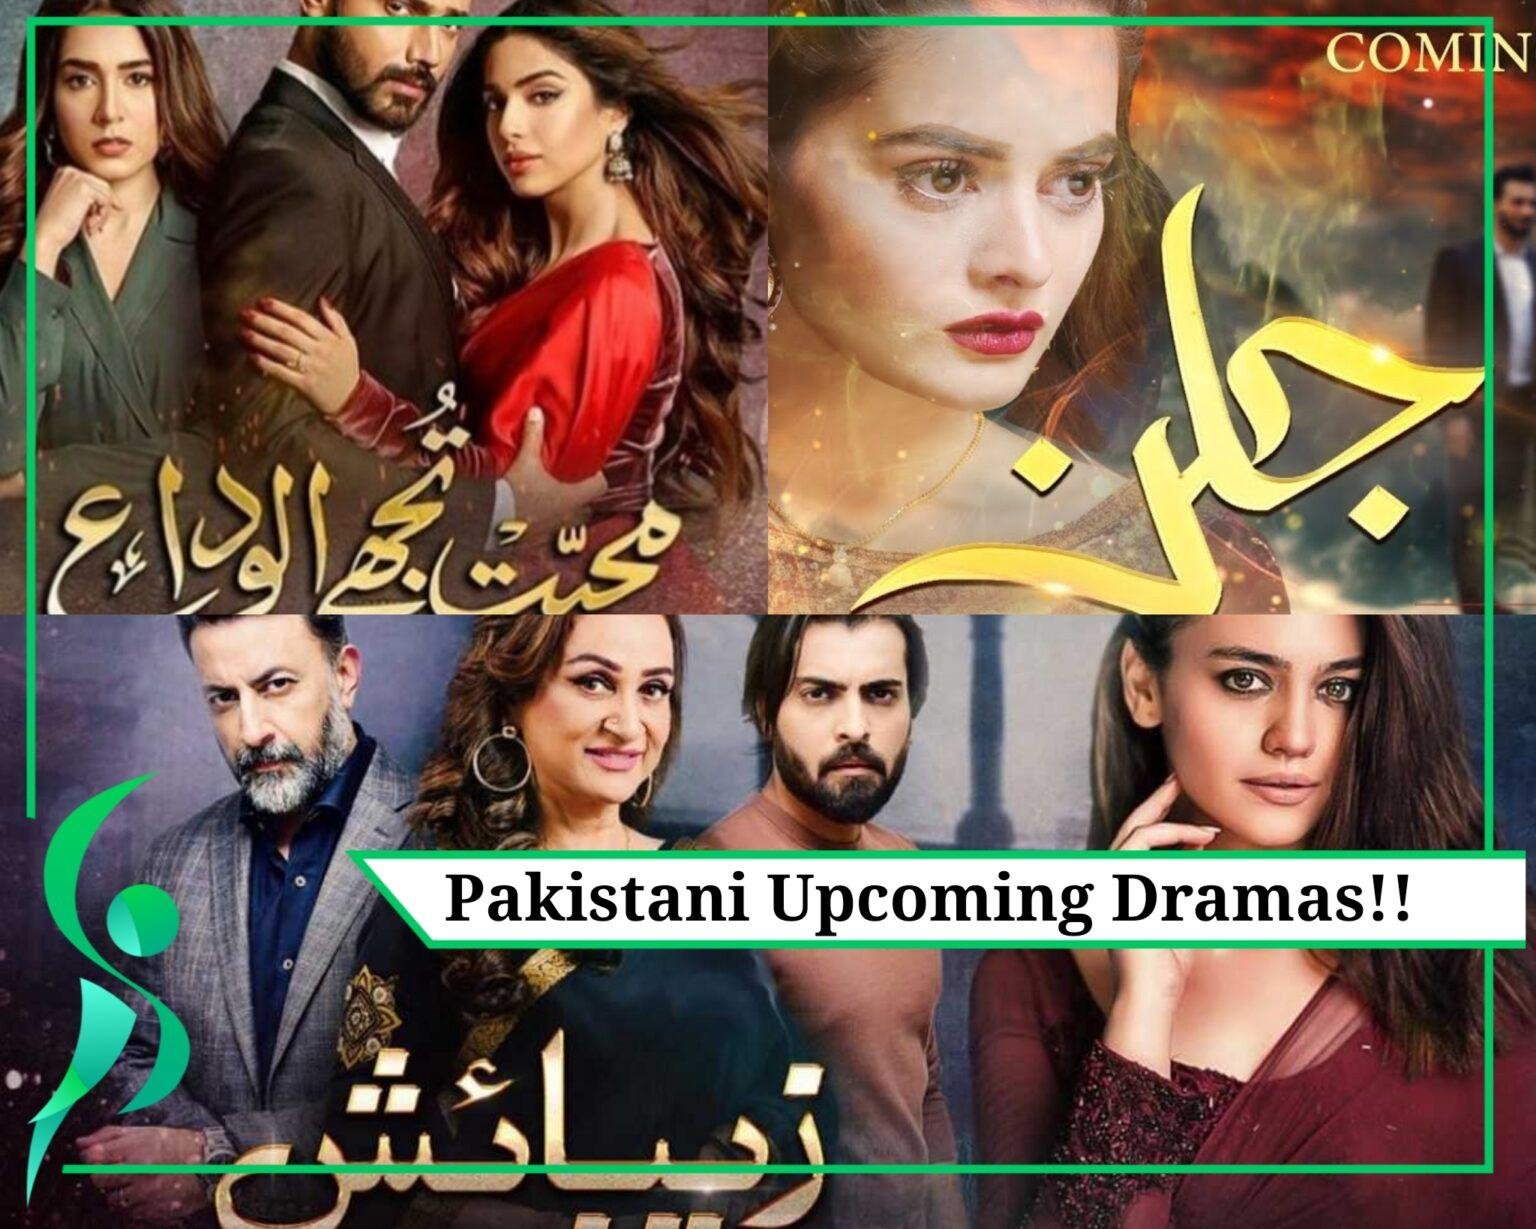 Pakistani Dramas!!! Pakistan